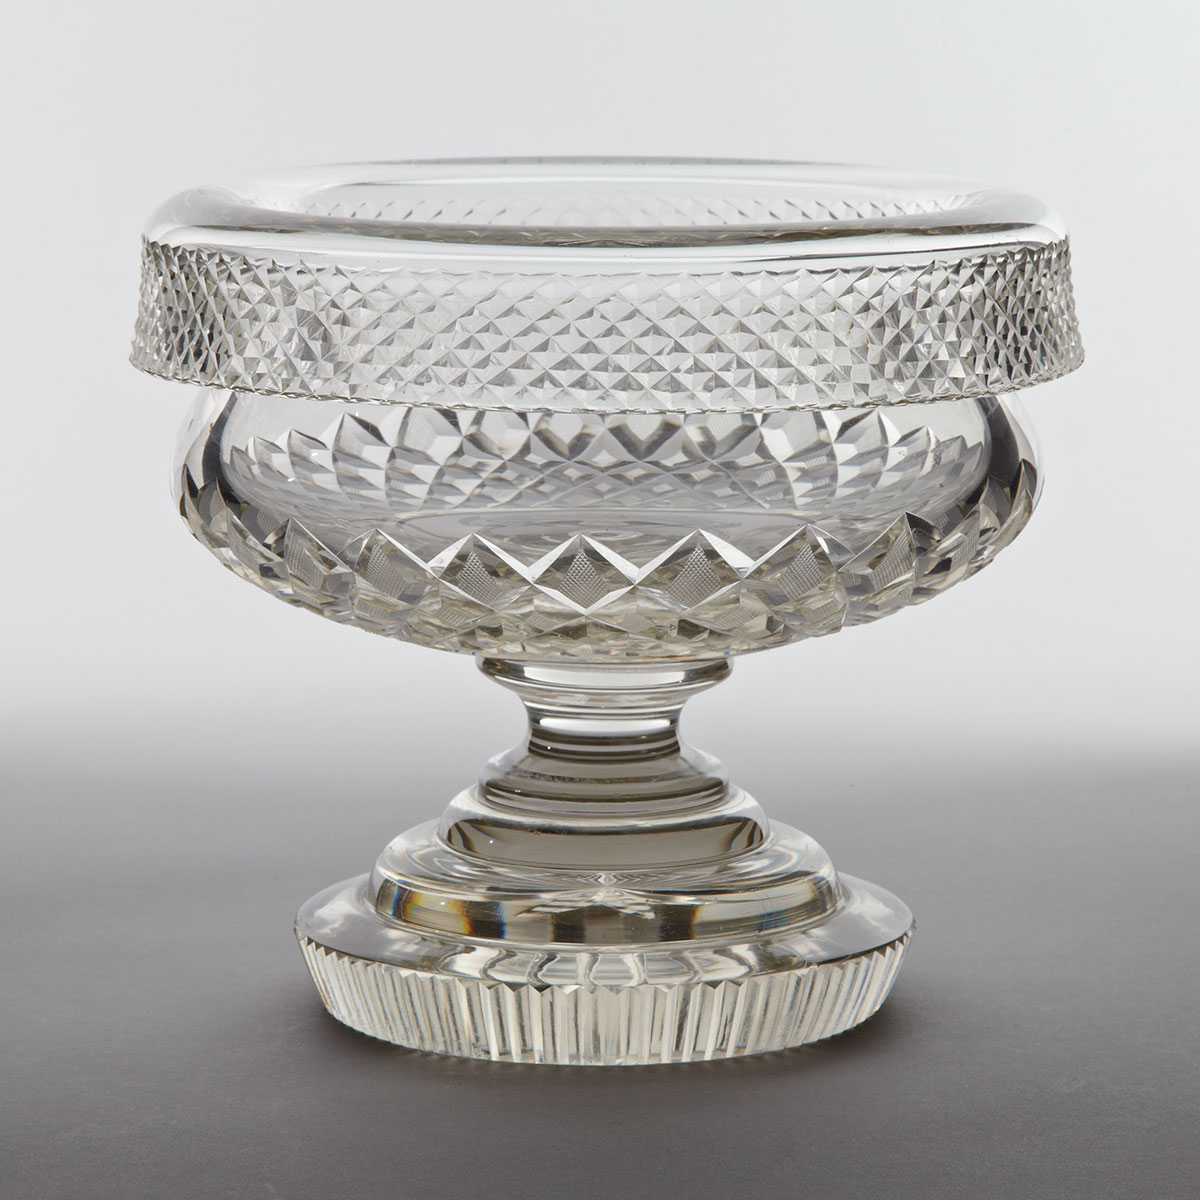 Anglo-Irish Style Cut Glass Bowl, c.1900